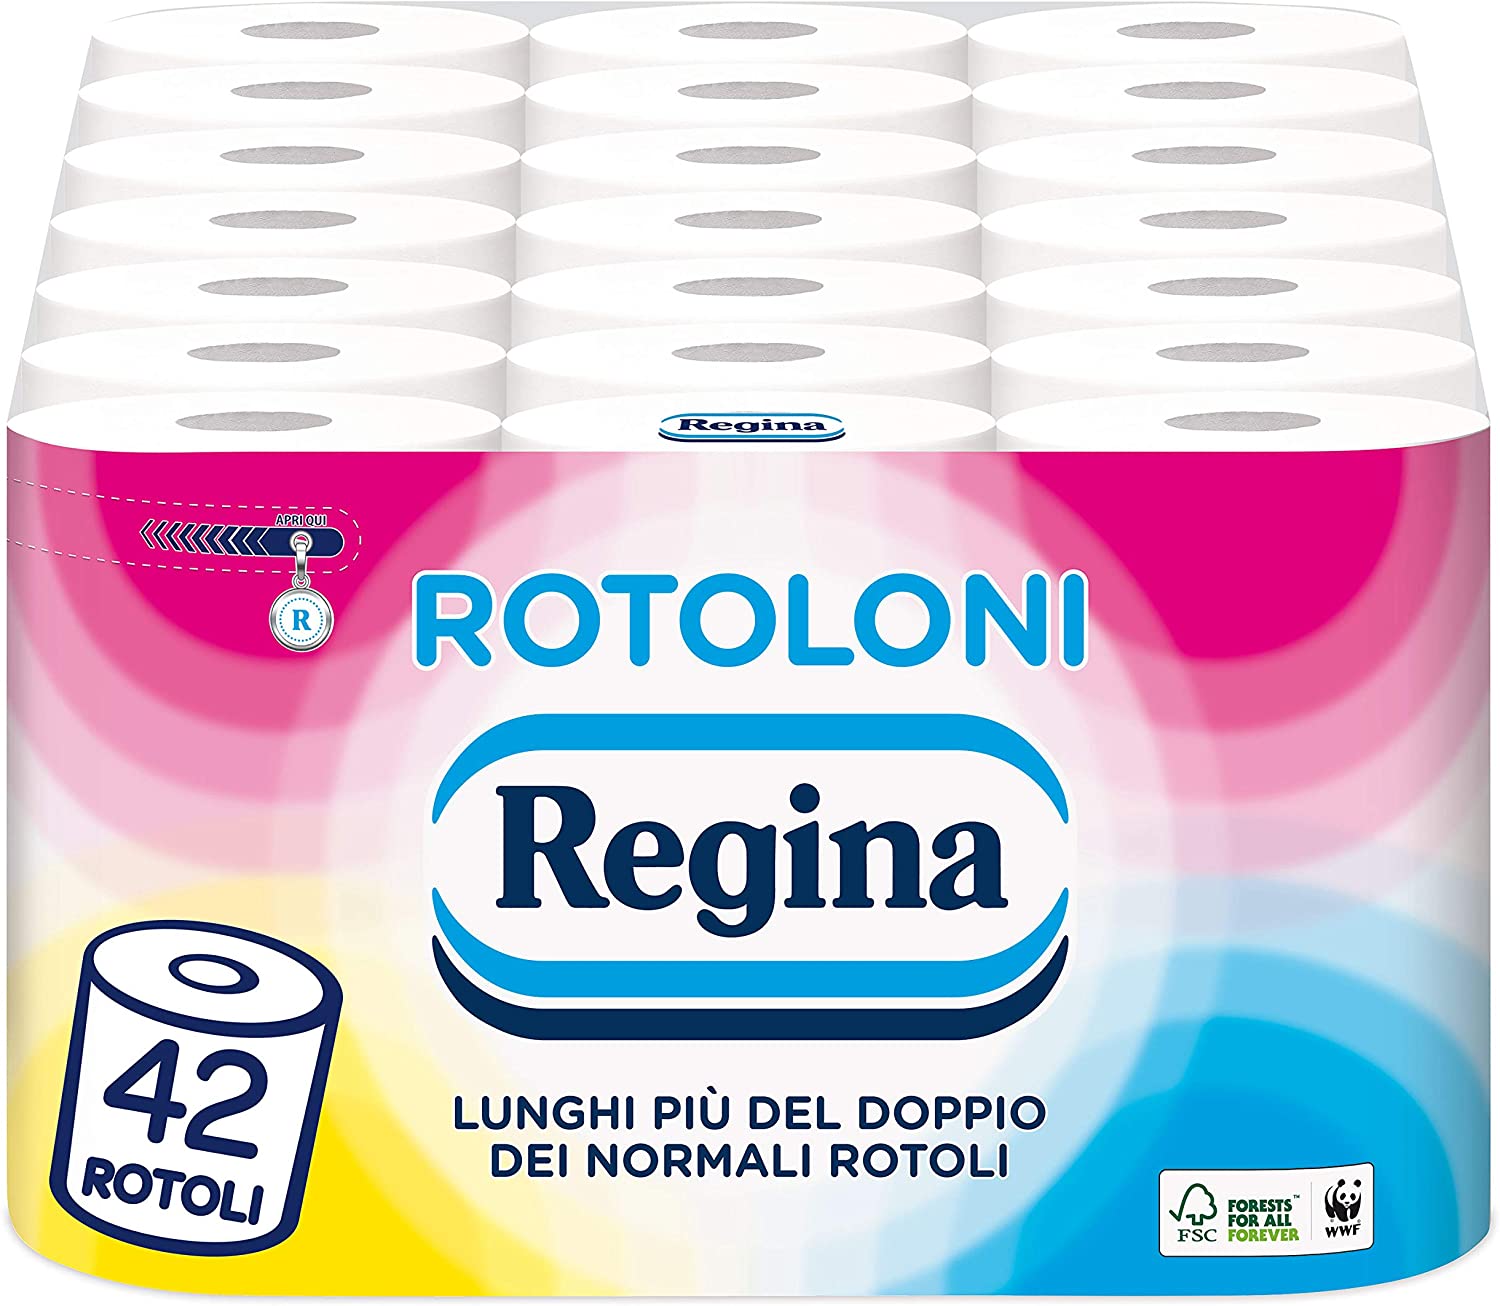 Rotoloni Regina Carta Igienica - Confezione da 42 Maxi Rotoli